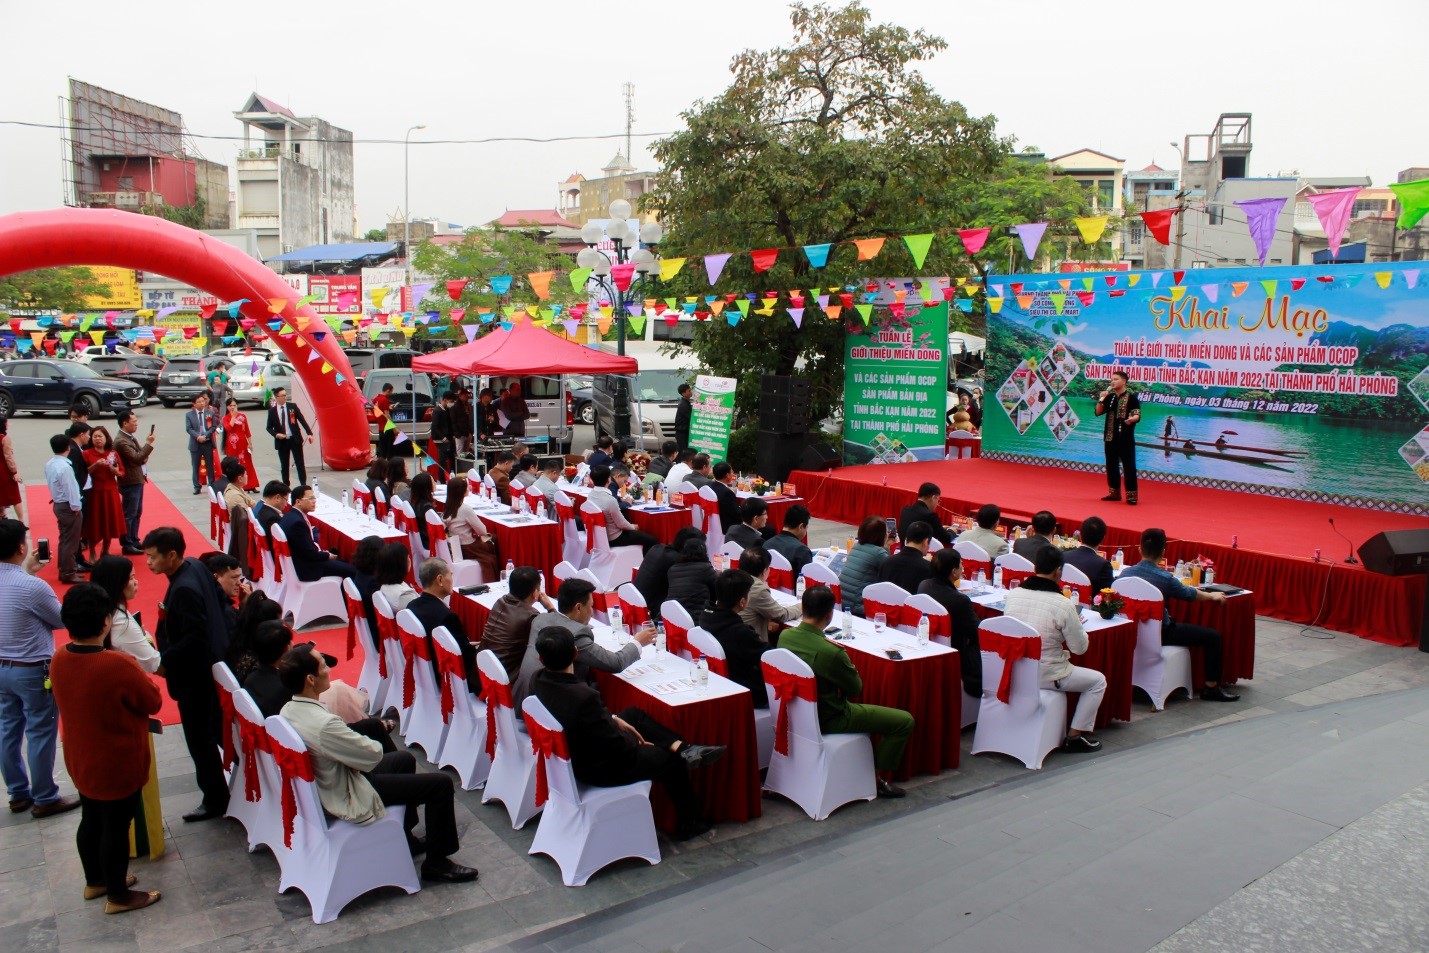 Tuần lễ giới thiệu Miến dong và các sản phẩm OCOP, sản phẩm bản địa tỉnh Bắc Kạn năm 2022 tại Hải Phòng